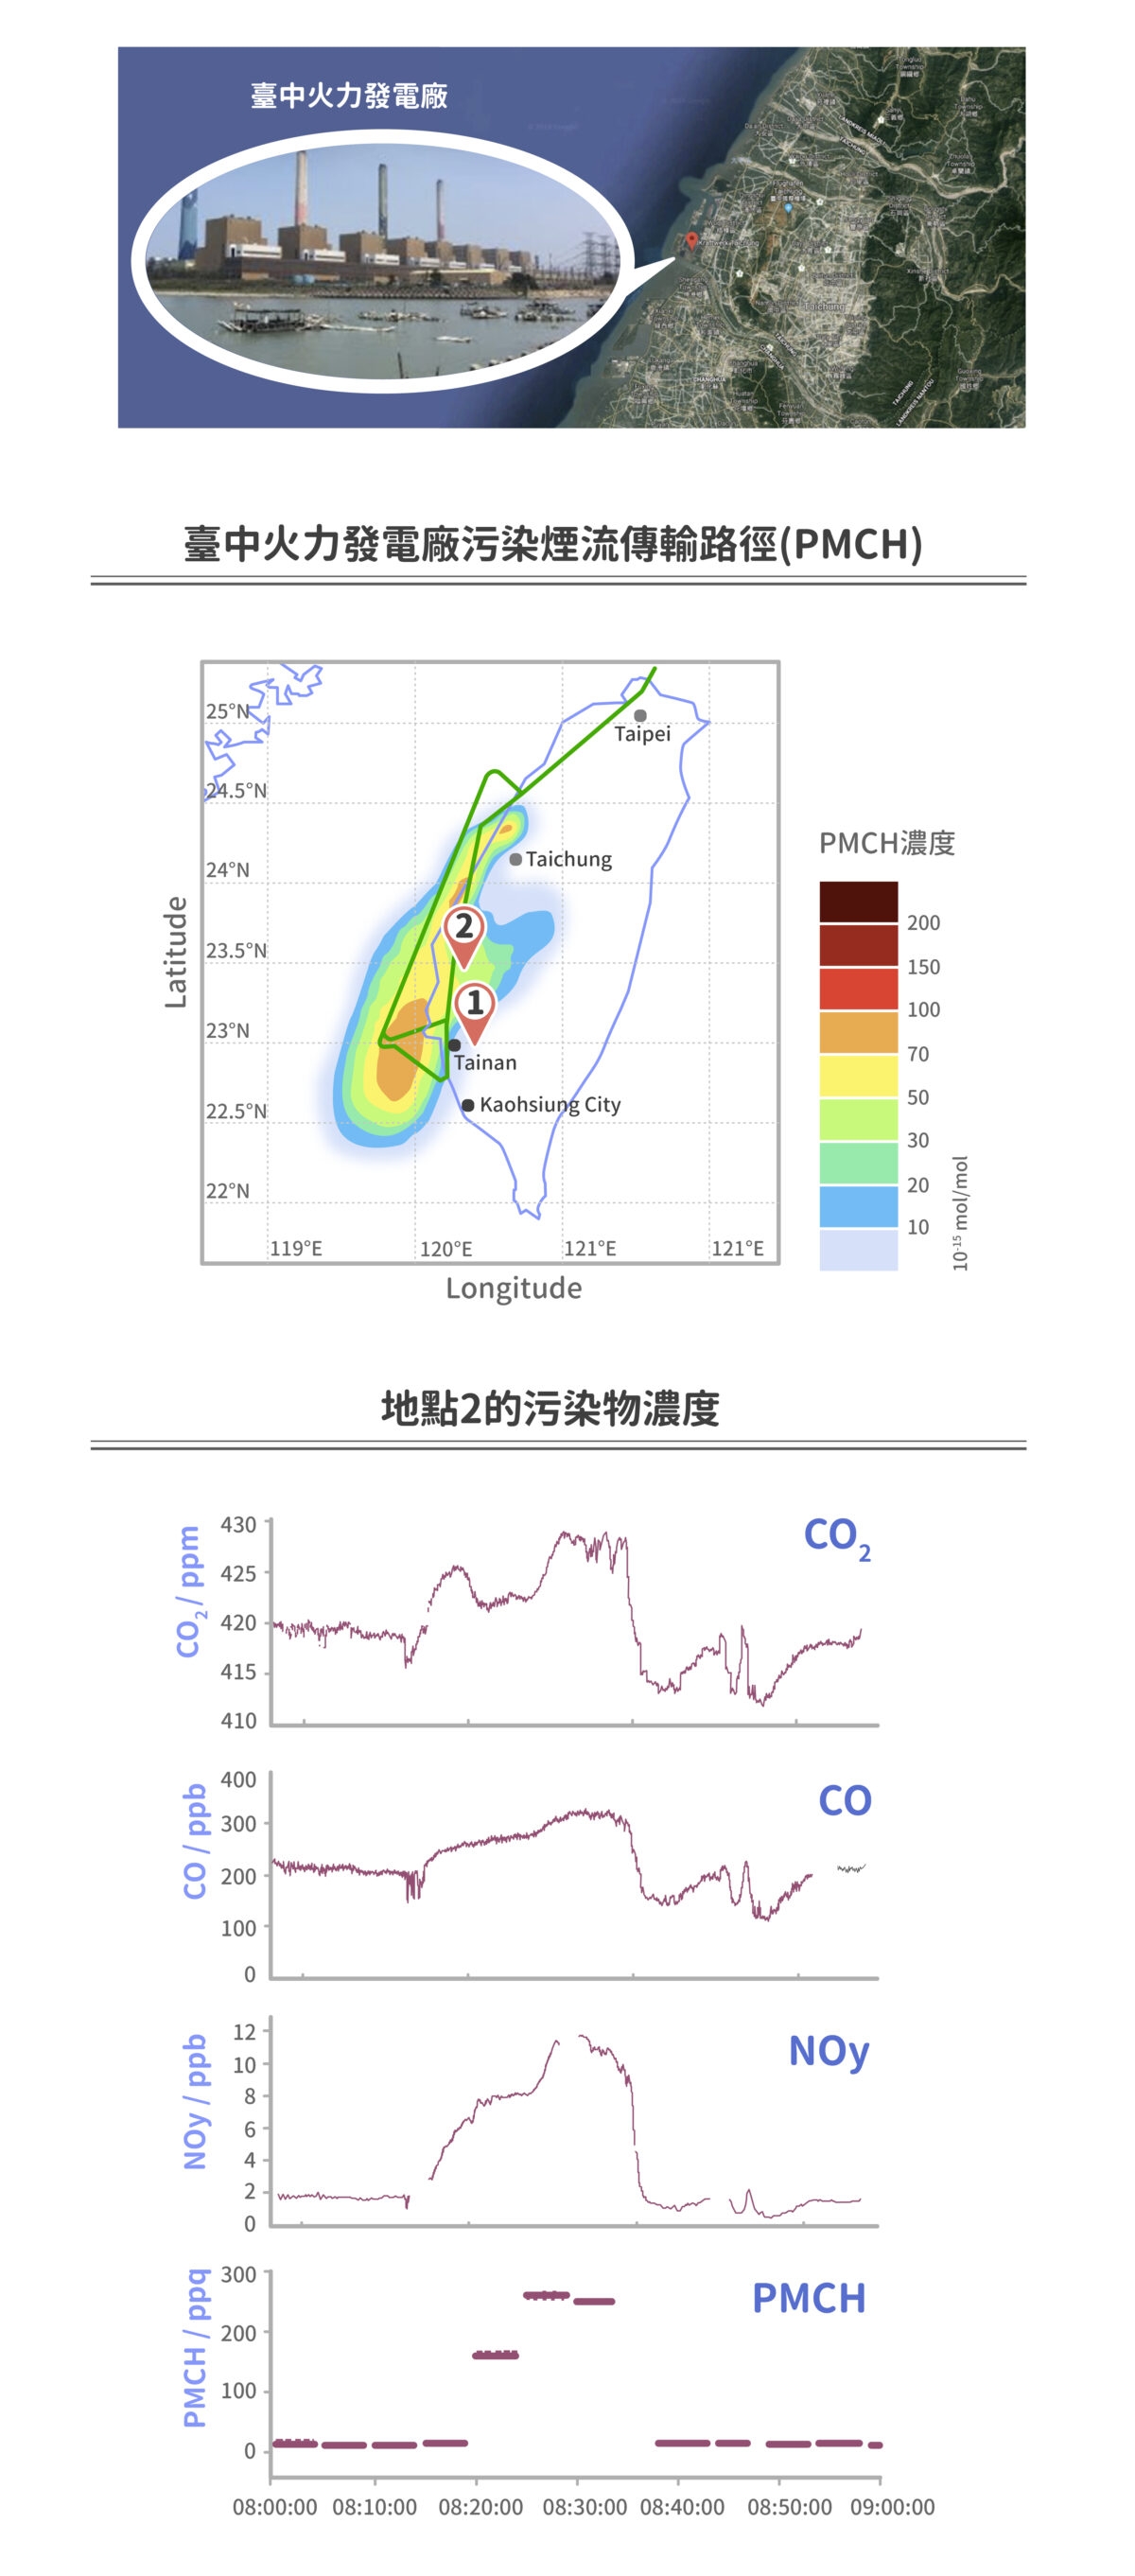 2018 年周崇光團隊和 EMeRGe-Asia 團隊合作，使用研究飛機和追蹤劑 PMCH，調查臺中火力發電廠汙染煙流的傳輸路徑，圖中可看到 PMCH 從臺中擴散到整個中南部的濃度趨勢，地點 1 為布袋附近，地點 2 為北港附近。從地點 2 的汙染物數據，可看到 PMCH 、氮氧化物、二氧化碳和一氧化碳濃度有相同的變化趨勢。 圖｜研之有物（資料來源｜周崇光） 